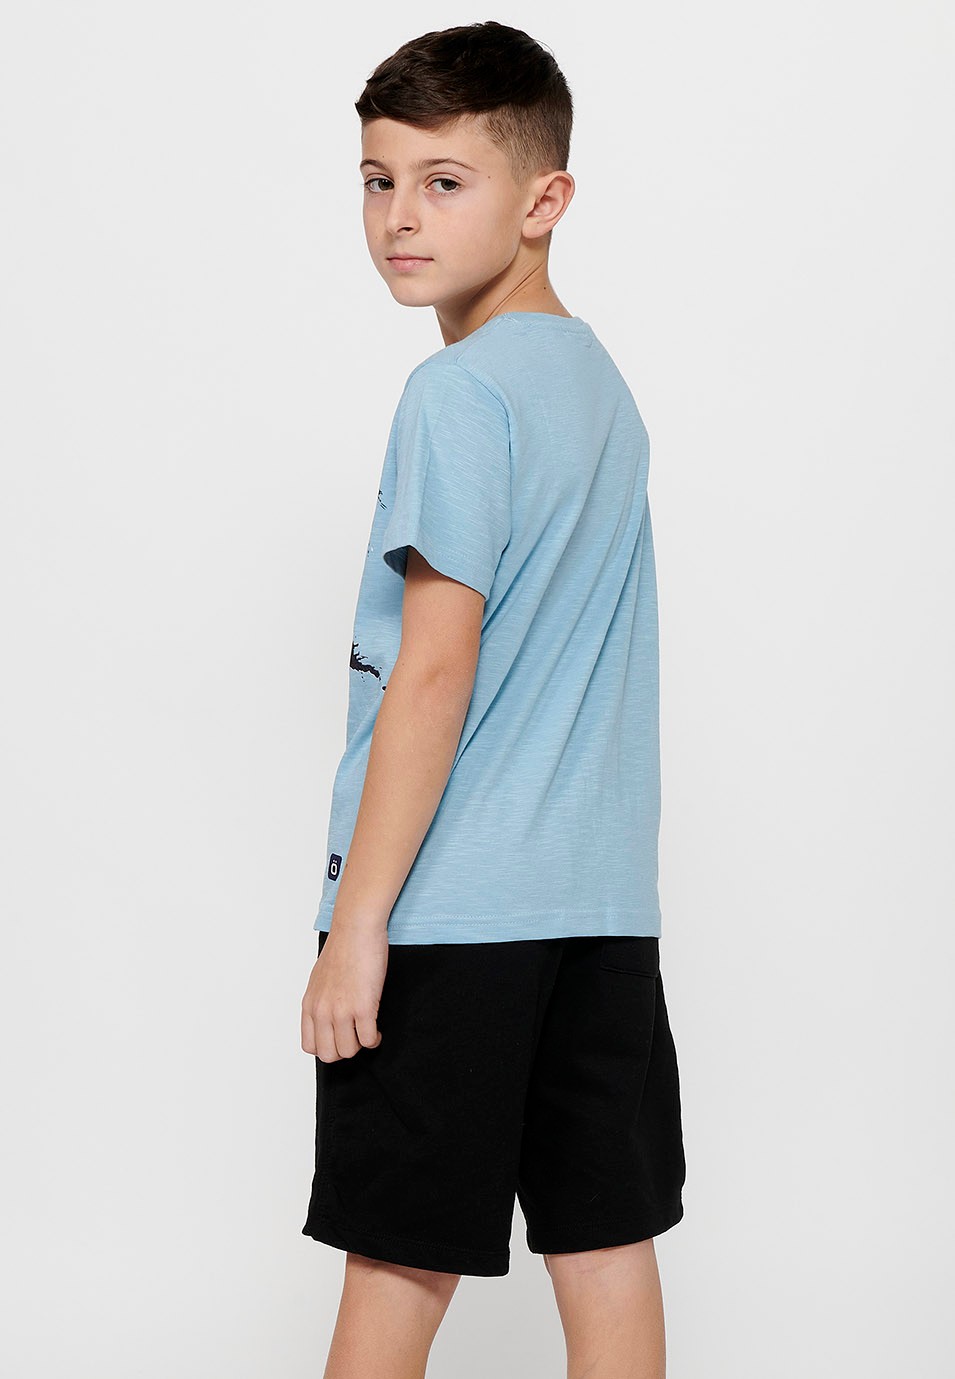 Camiseta de manga corta de Algodón y cuello redondo. Estampado delantero Color Azul celeste para Niño 4